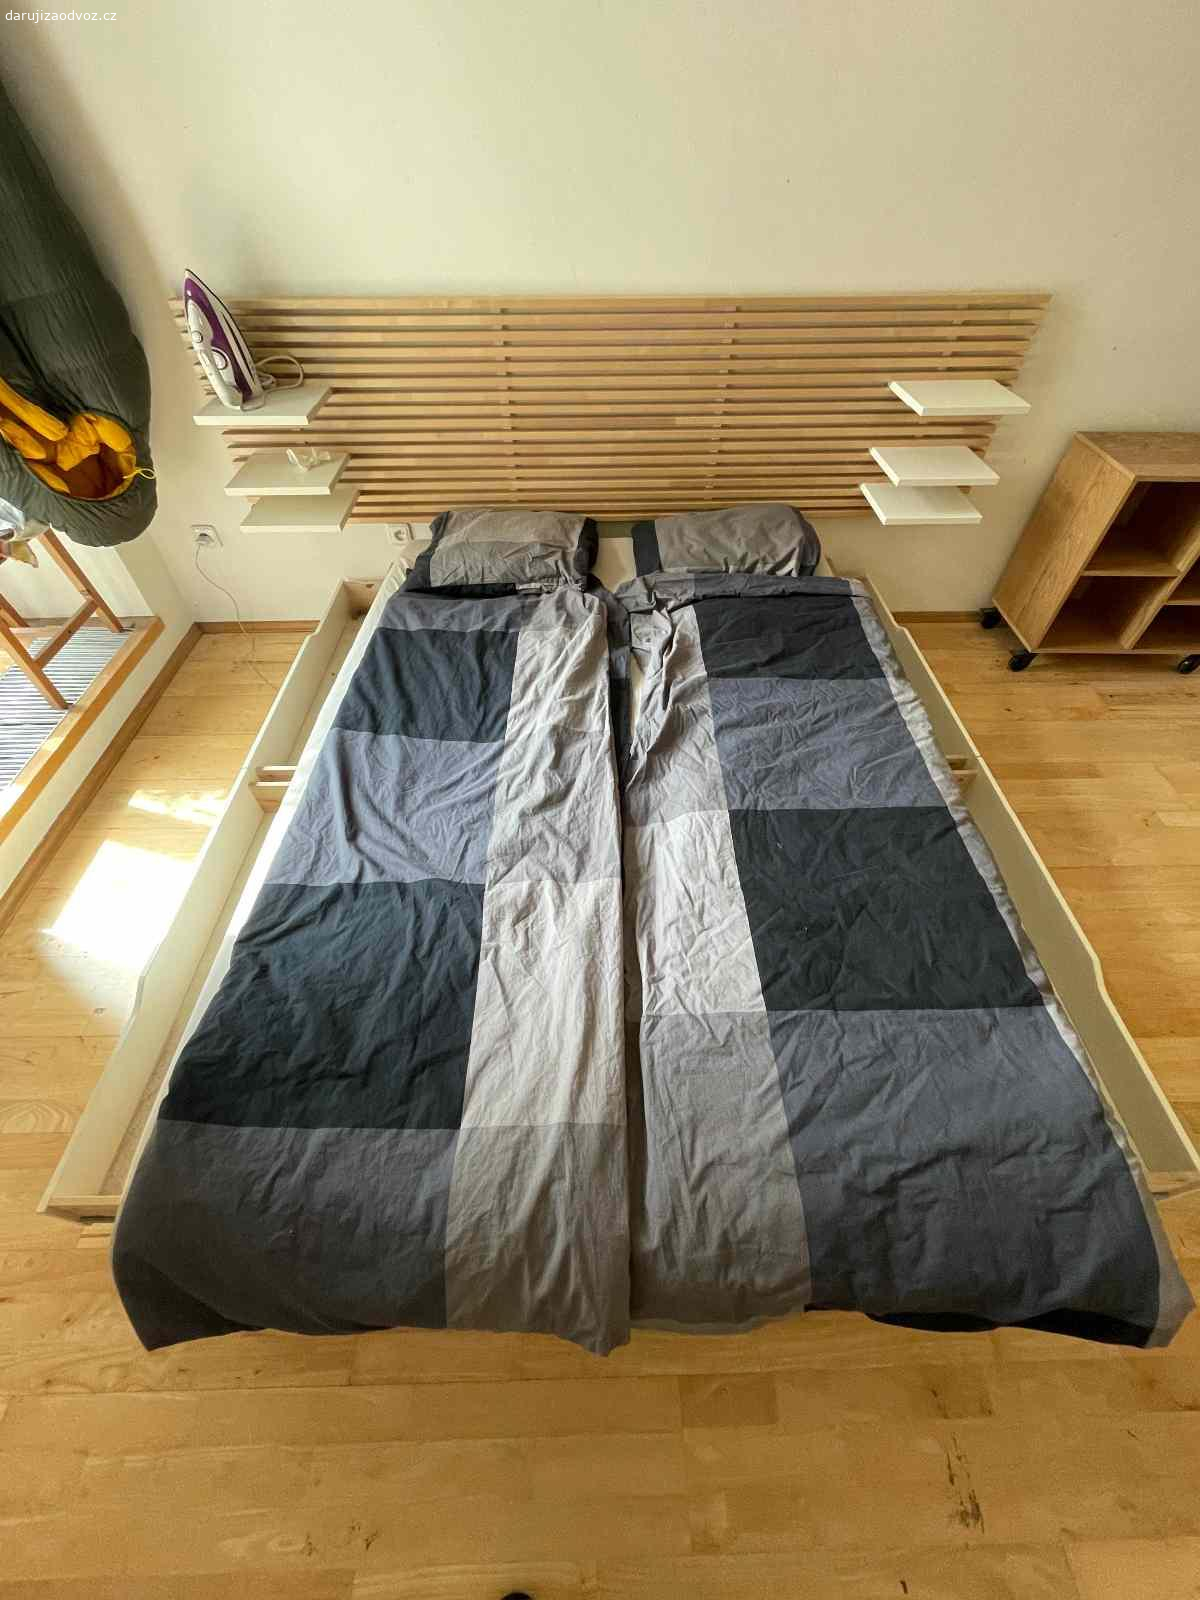 Postel dvojlůžková 160 cm šířka. Daruji postel + matraci (případně je k dispozici i ložní prádlo). Vše je ve výborném stavu, postel má i úložný prostor (šuplíky). K posteli patří i závěsné čelo s poličkami.